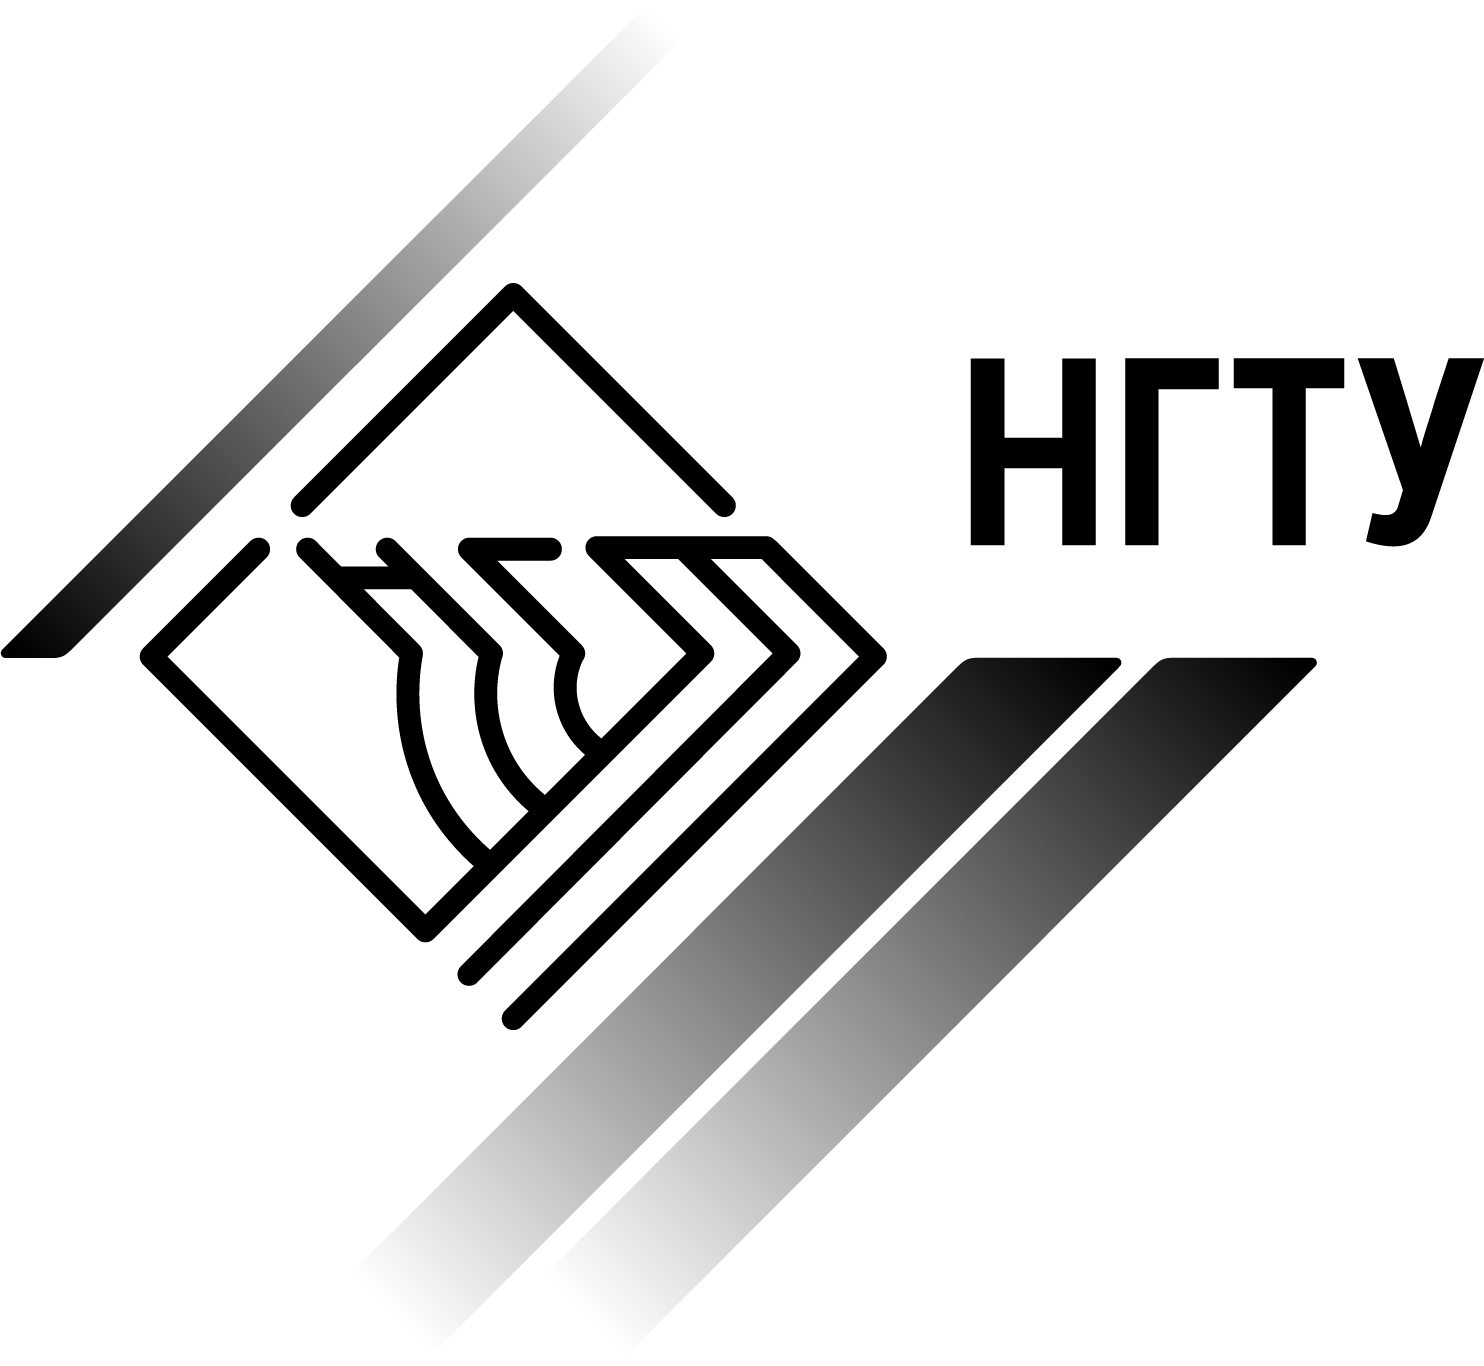 Логотип (Новосибирский государственный Нижегородский государственный технический университет им. Р.Е. Алексееватеатральный институт)